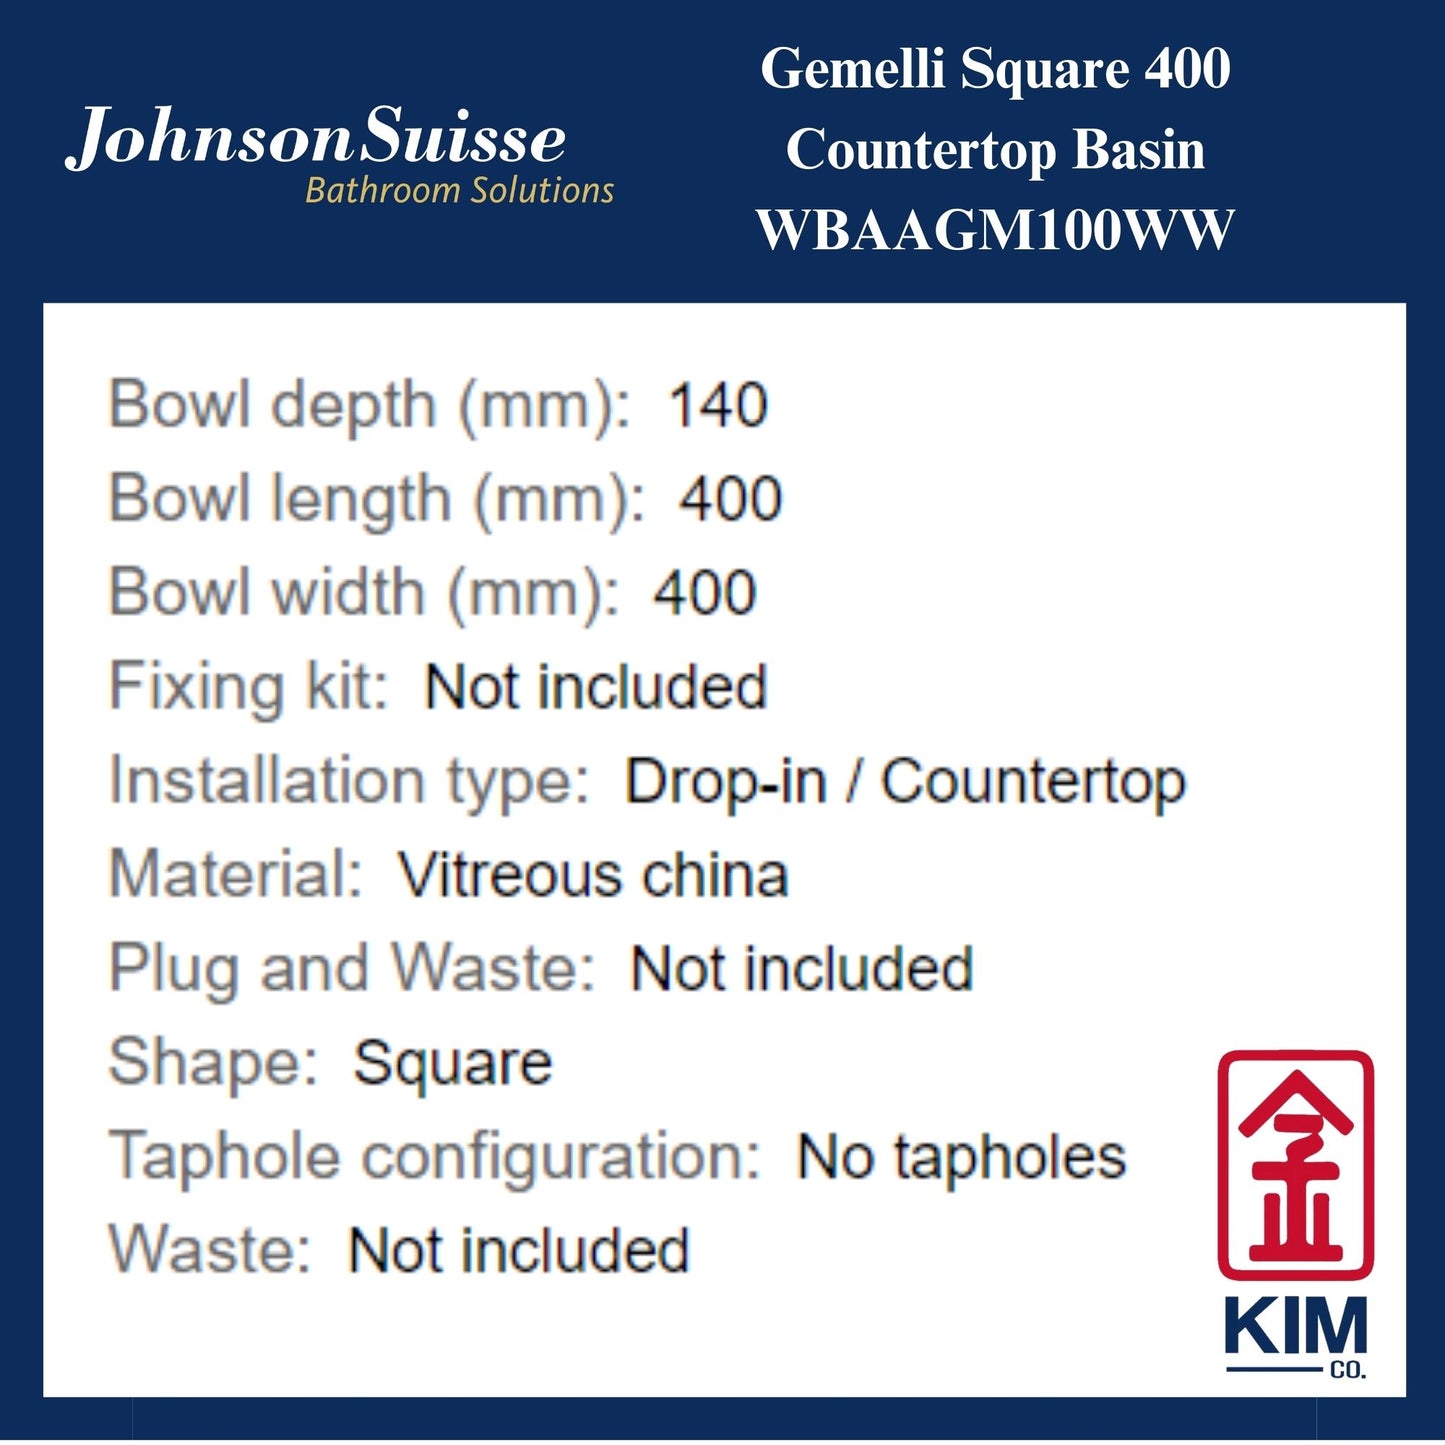 Johnson Suisse Gemelli Square 400 Countertop Basin (WBAAGM100WW)